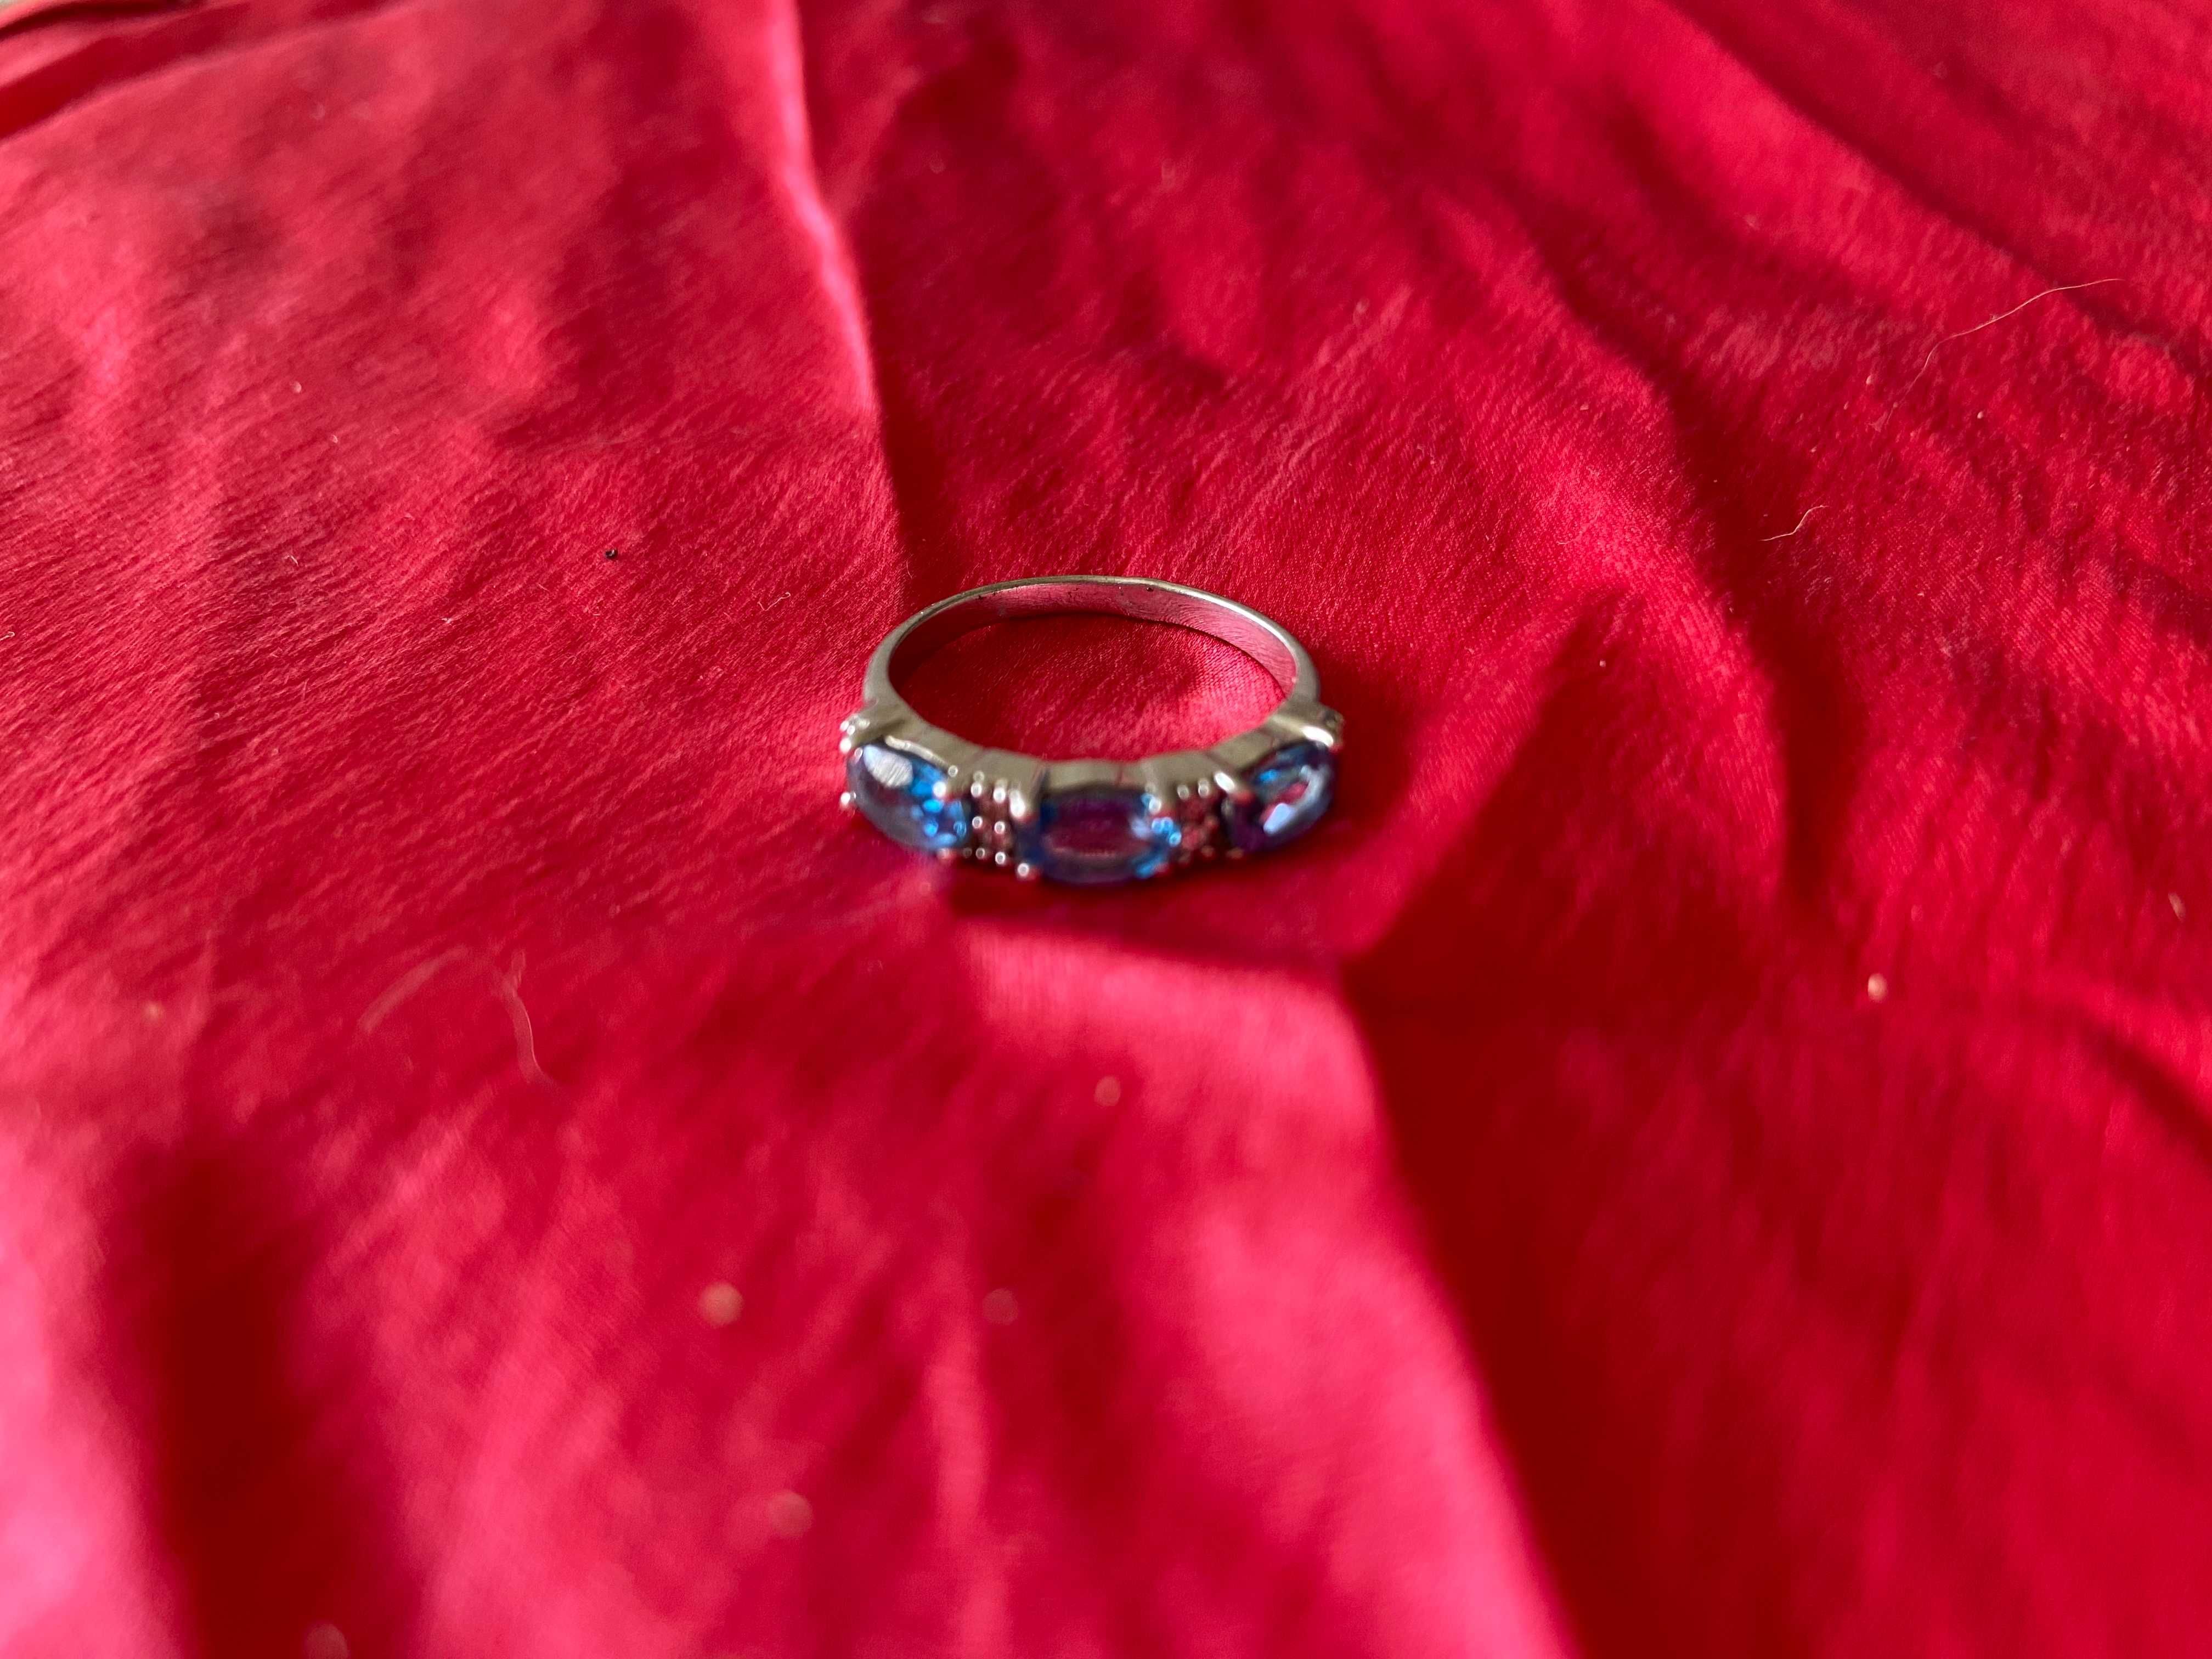 Серебряное кольцо с золотыми вставками, с жемчугом, с янтарем